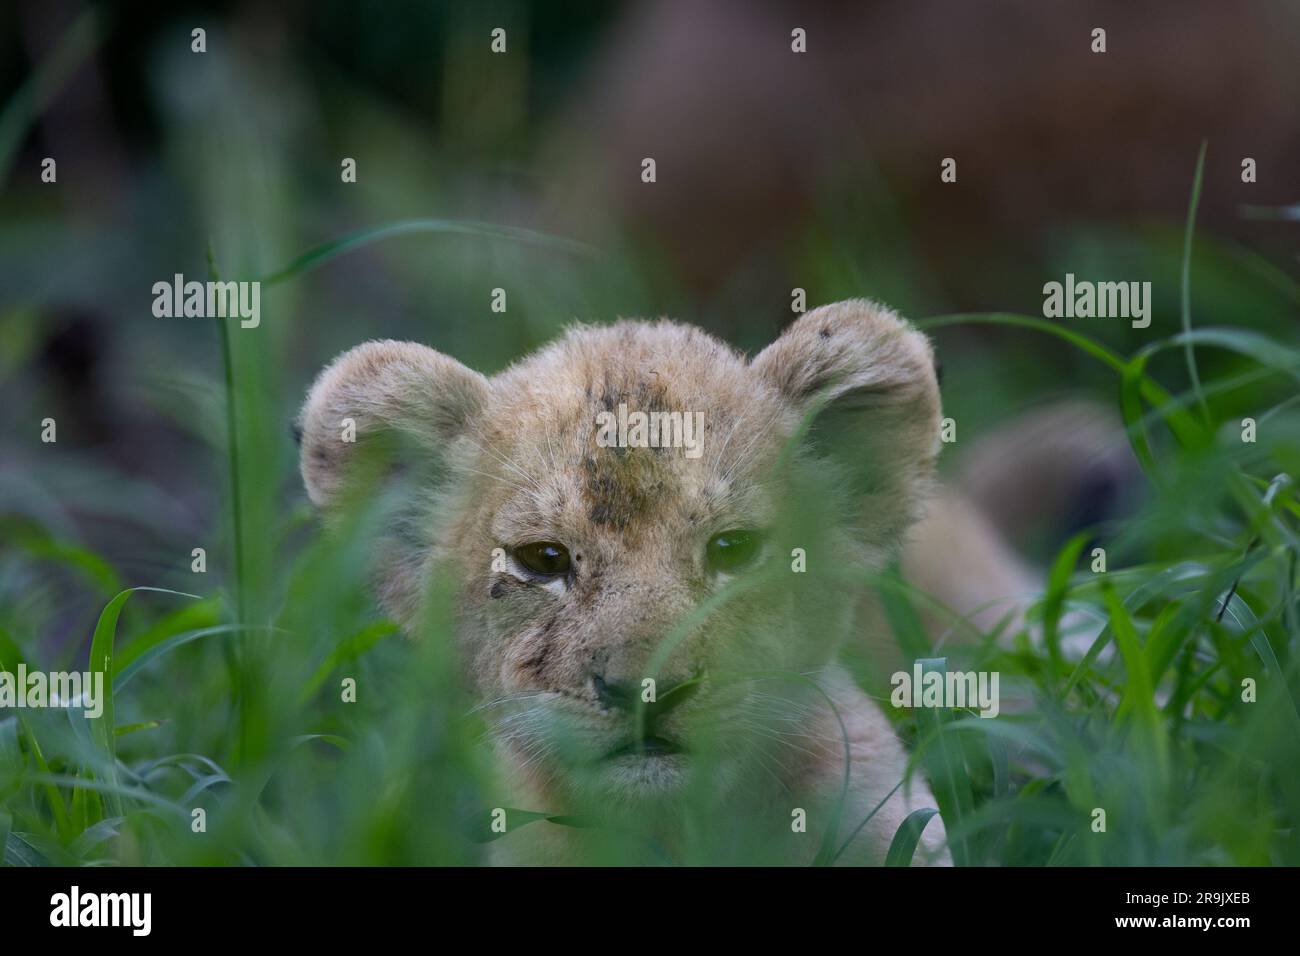 Cuccioli di leone, Panthera leo, sdraiati con la madre in erba lunga, teste visibili sopra l'erba. Foto Stock